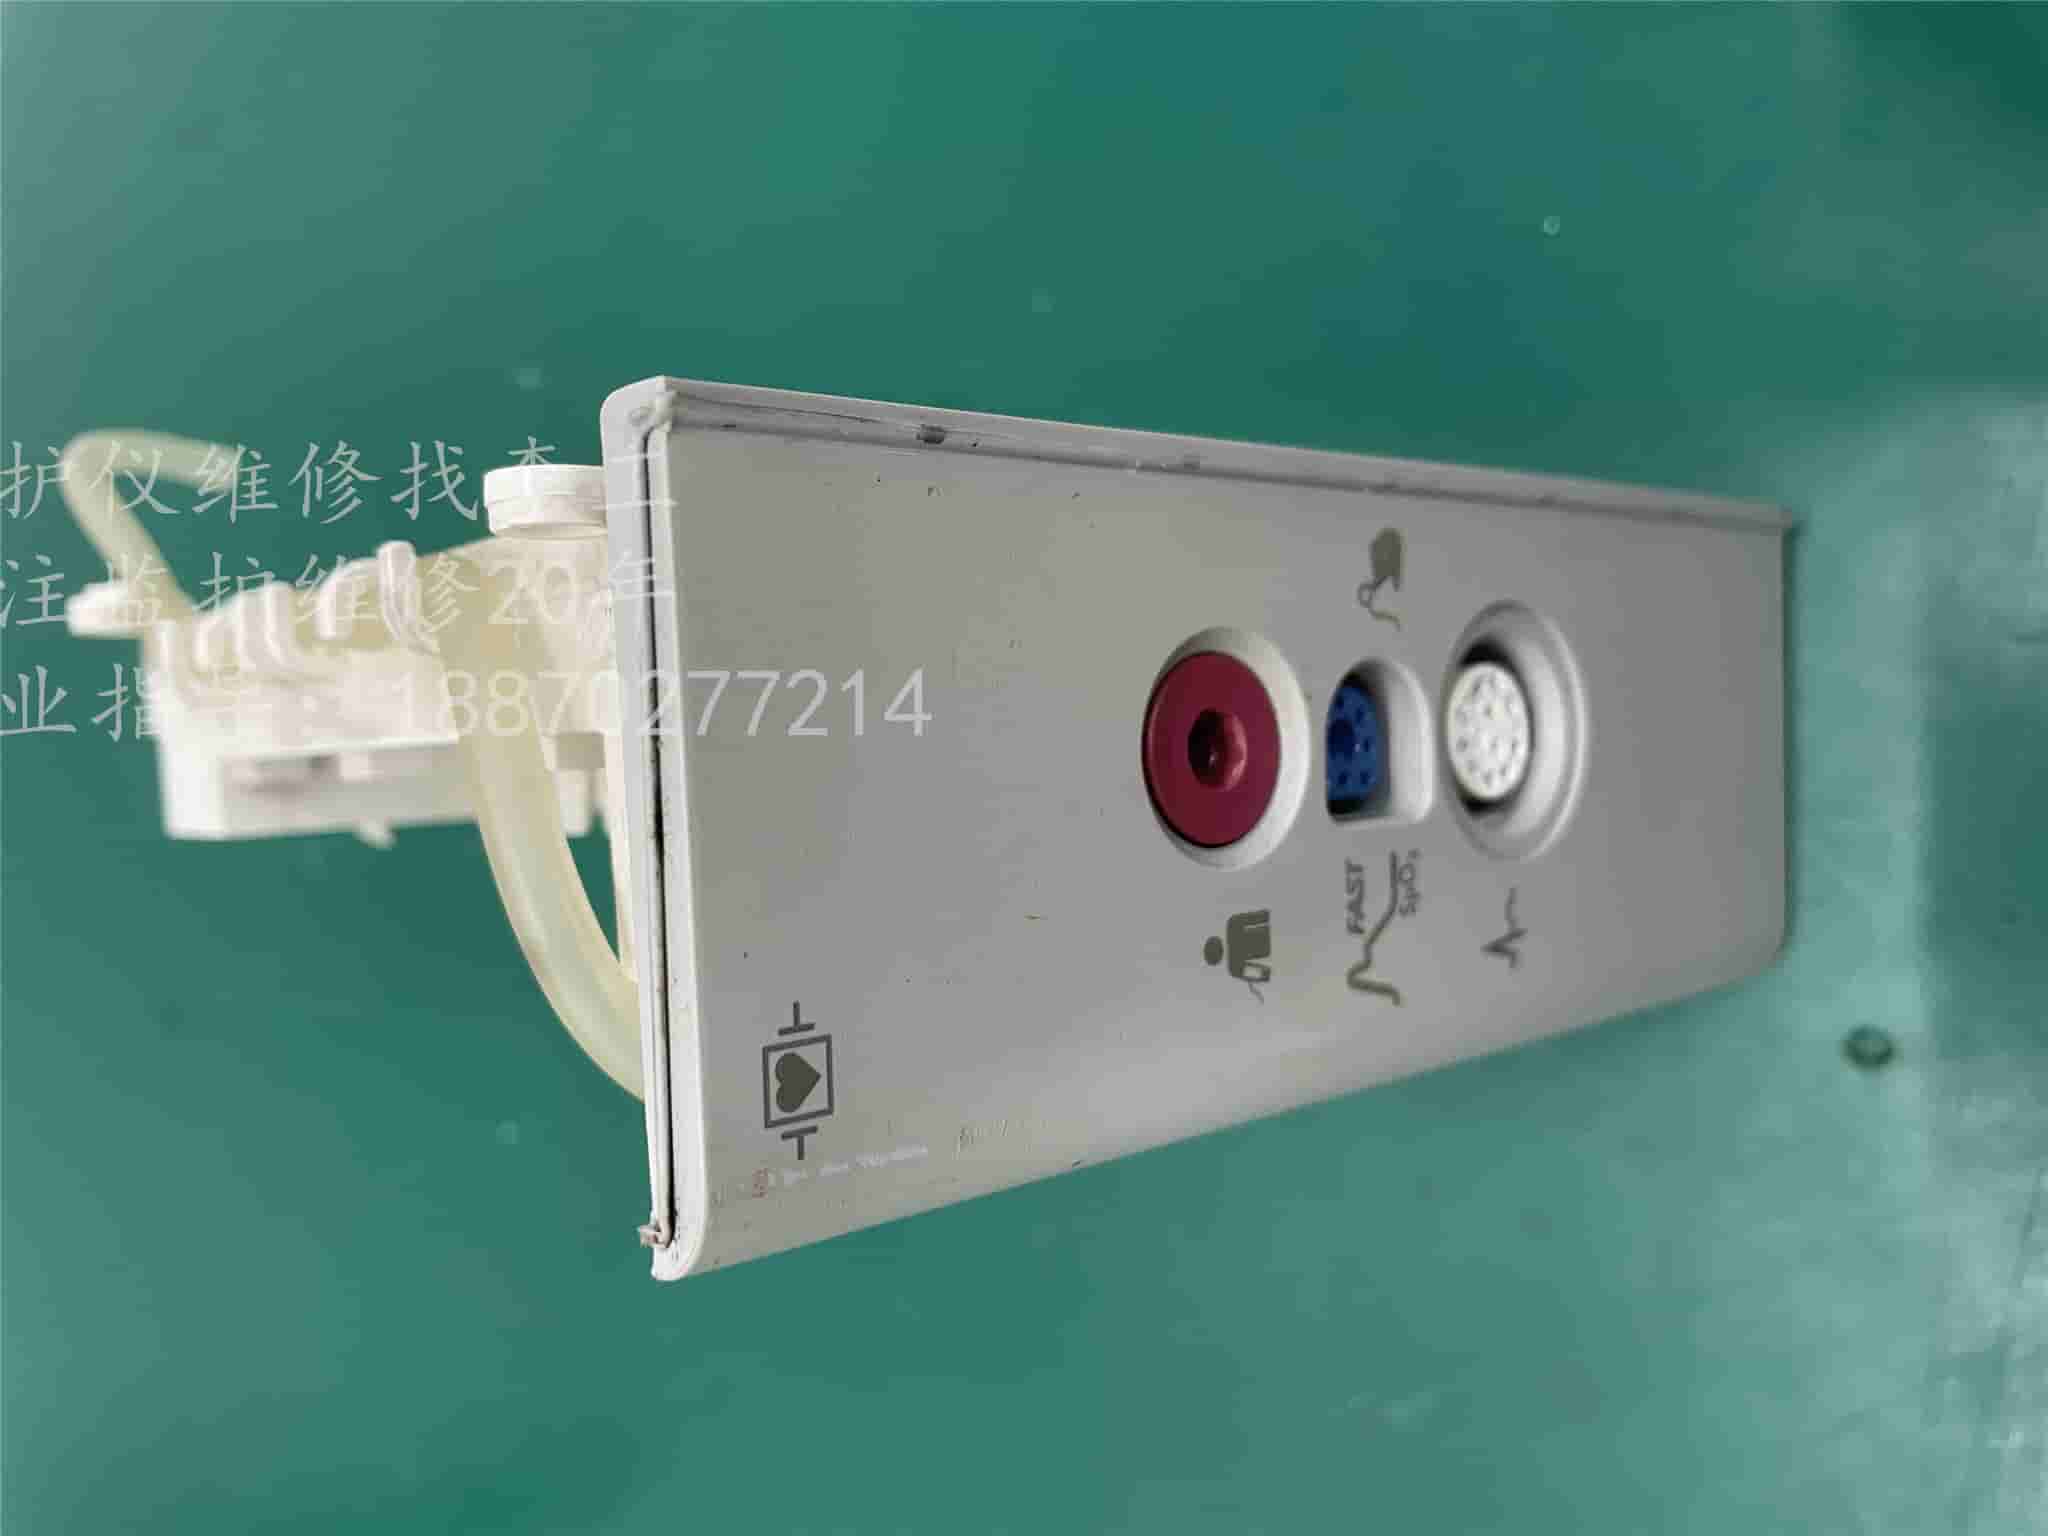 飞利浦MP5监护仪参数接口面板组件包含ECG、SPO2、NIBP接口板